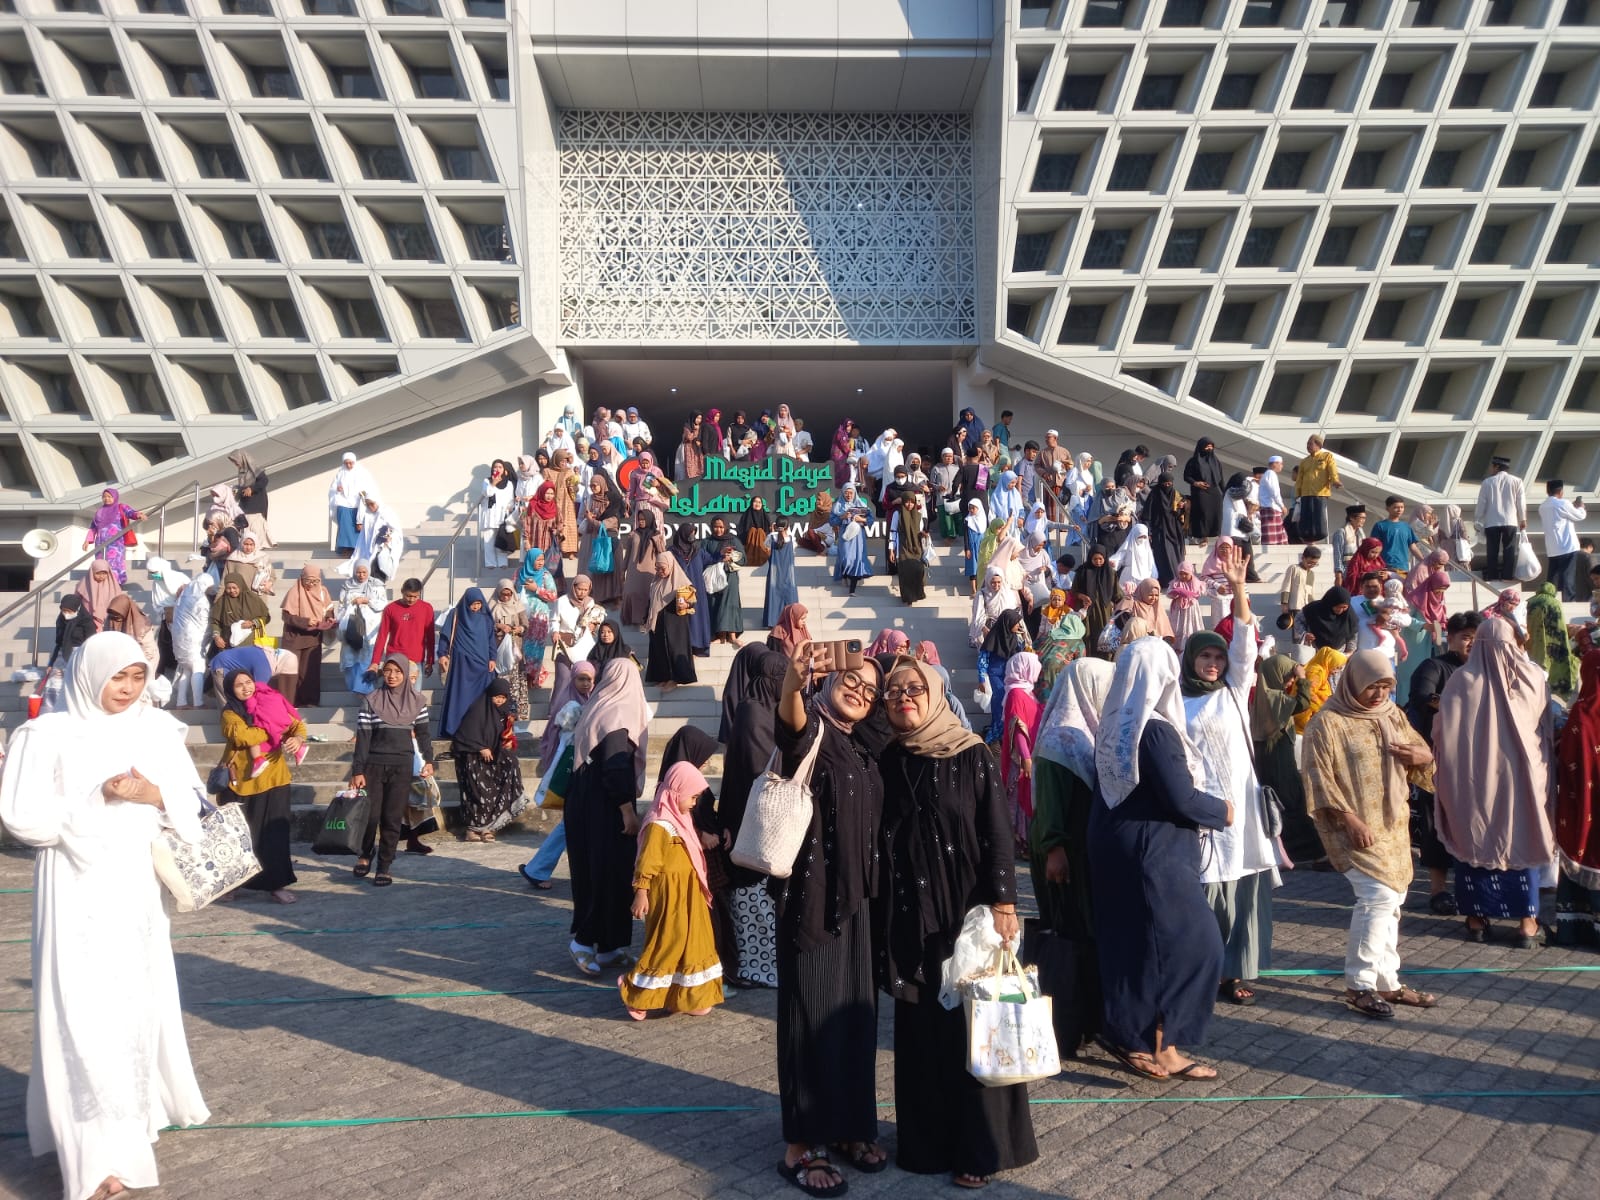 Ribuan Umat Islam Ikuti Salat Idul Adha di Masjid Raya Islamic Center Surabaya